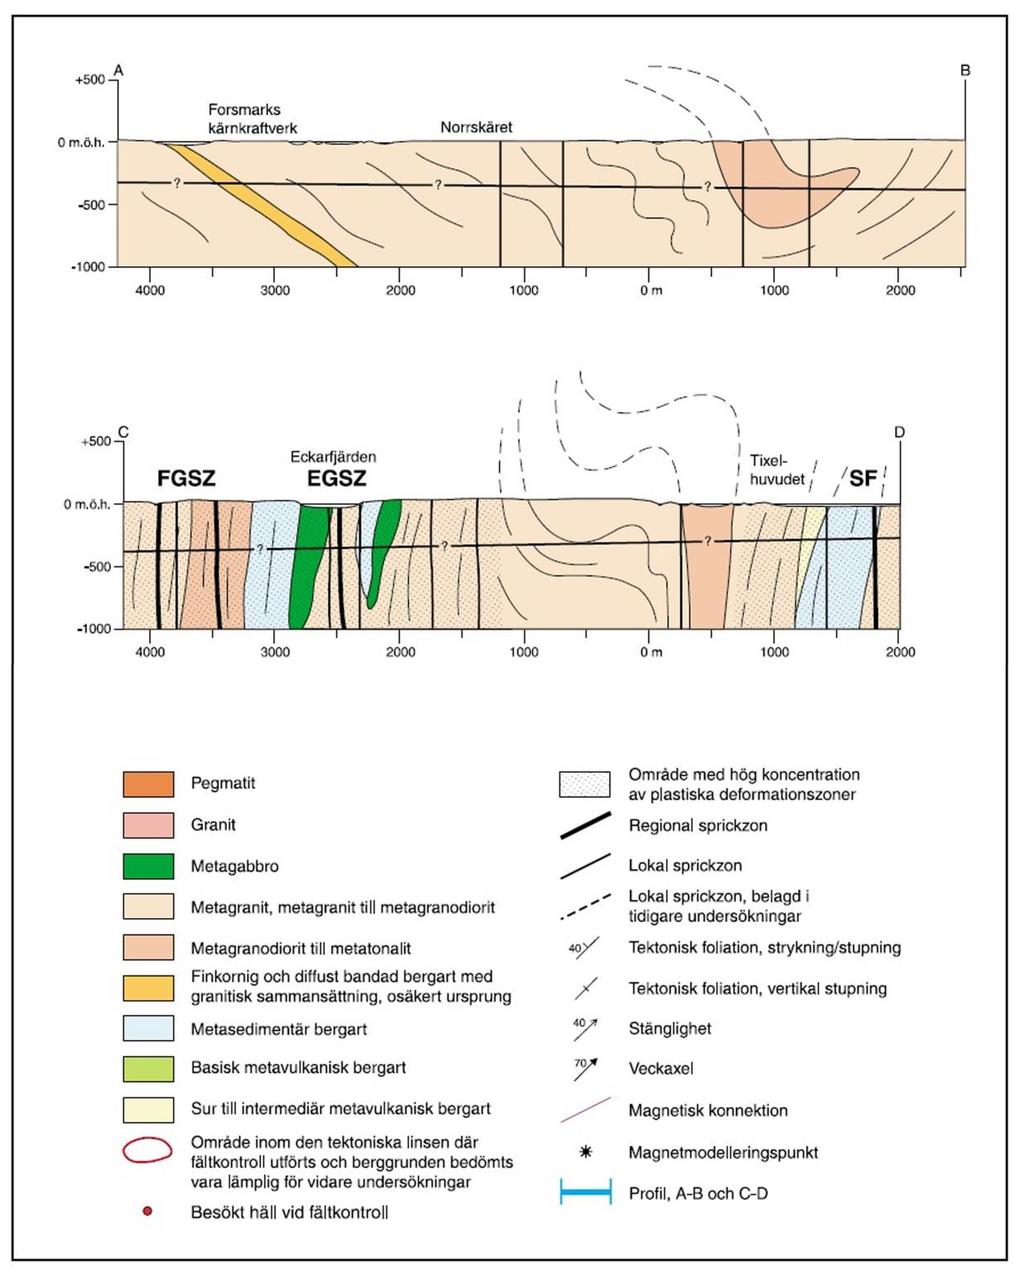 Figur 5B. Geologiska profiler i Forsmarksområdet, profilernas läge ses i figur 5A. Skärningspunkten för profil A-B och C-D ses i punkten 0 m (SKB,2000).